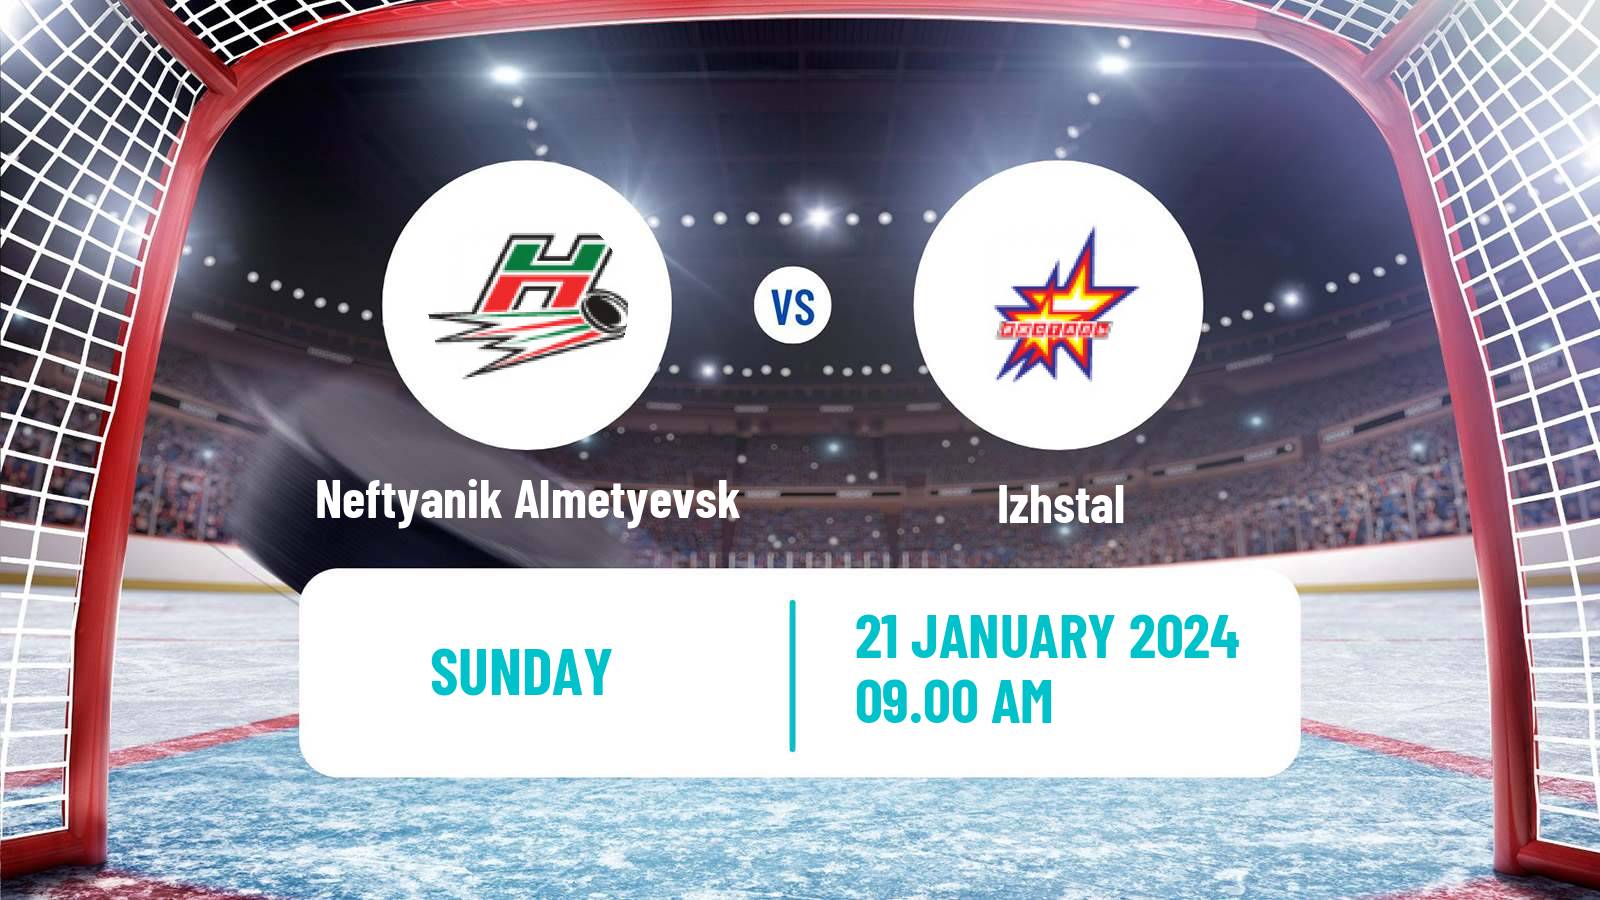 Hockey VHL Neftyanik Almetyevsk - Izhstal